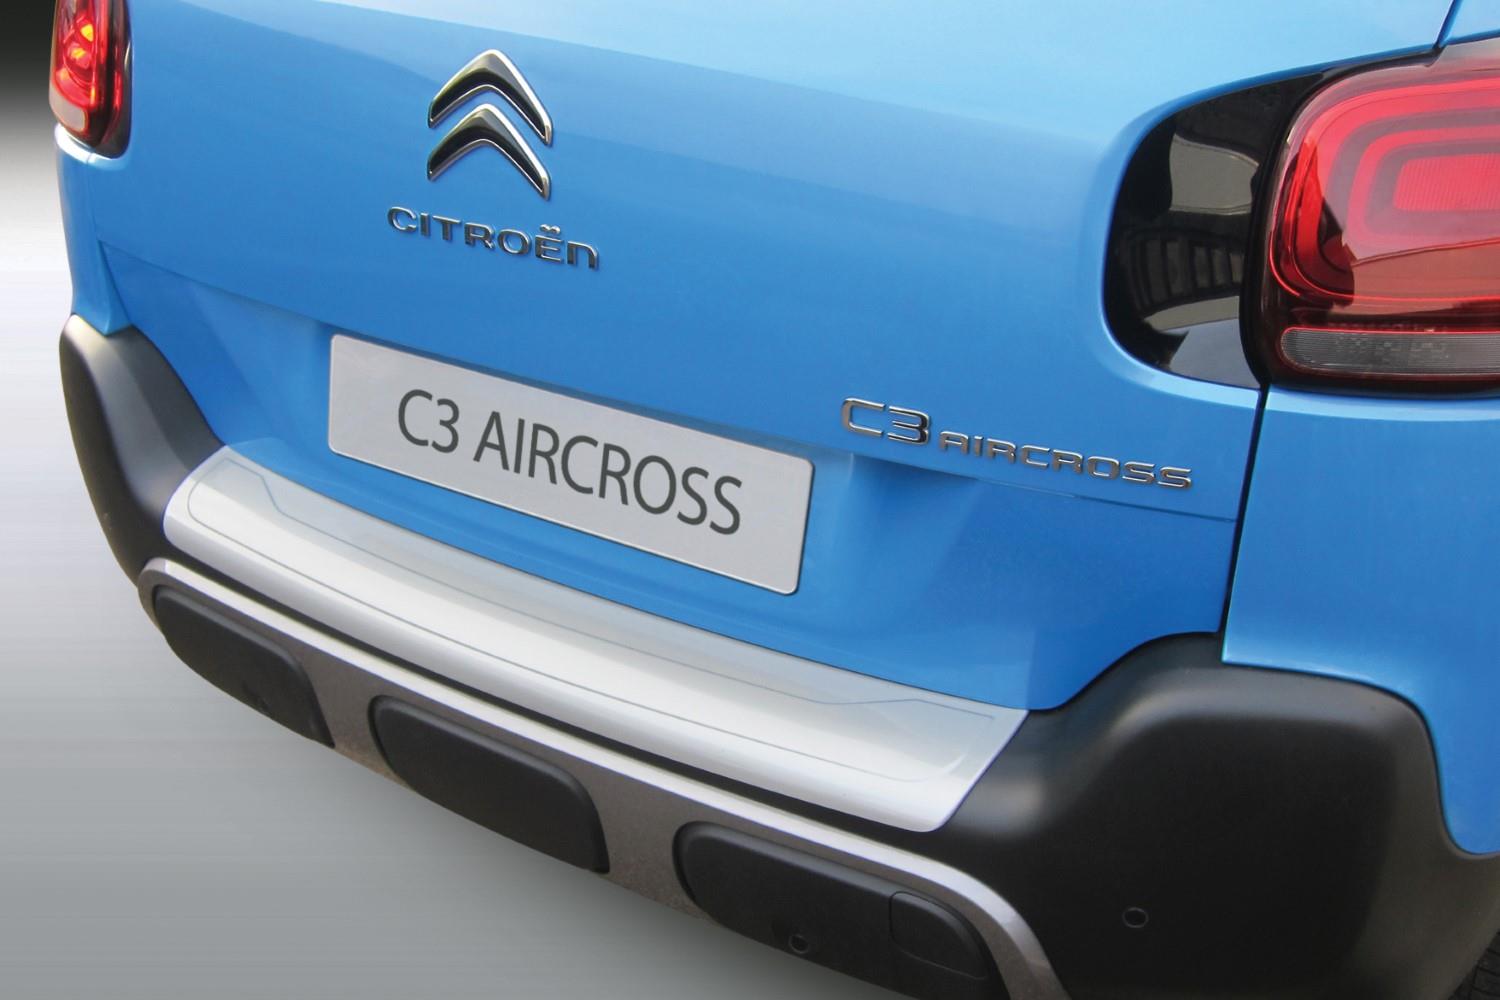 Protection de seuil de coffre Citroën C3 Aircross 2017-présent ABS - noir mat